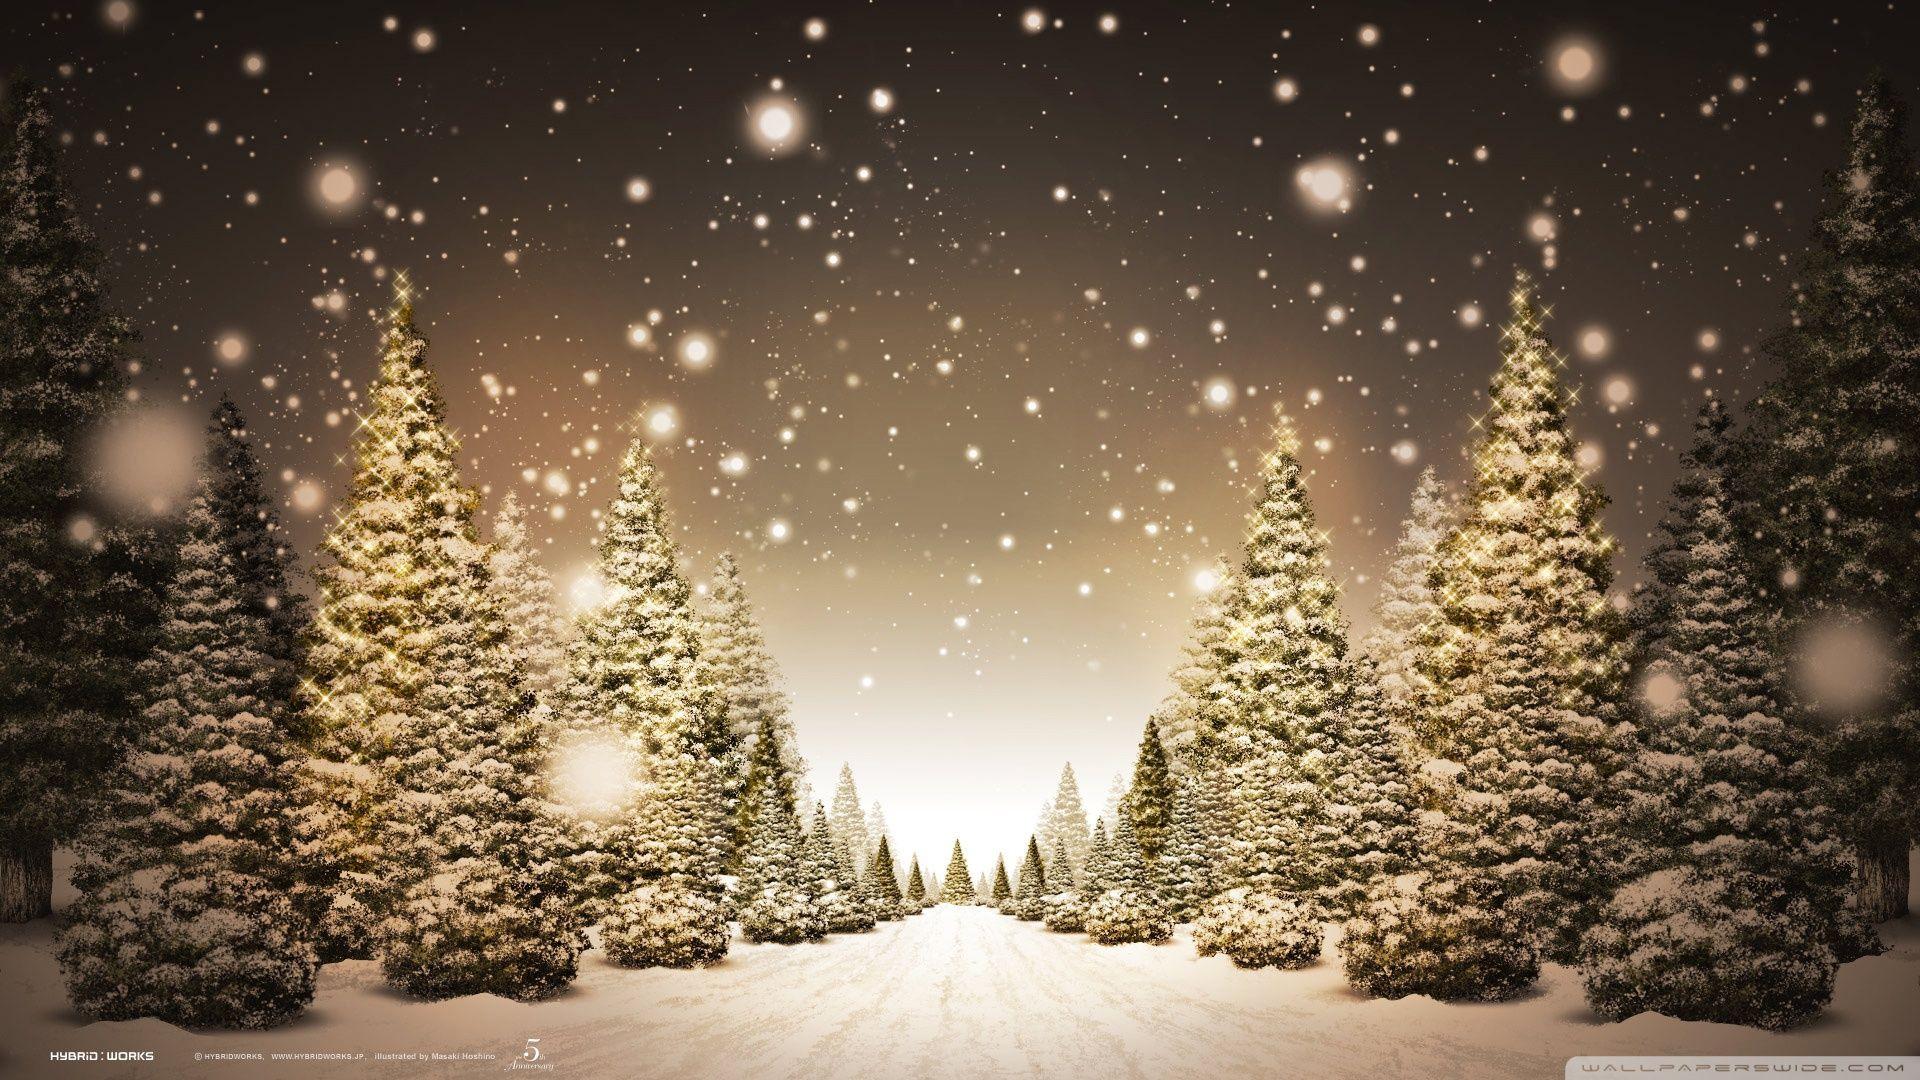 Đón giáng sinh với bộ sưu tập hình nền Giáng sinh 1980 x 1080 đầy ấn tượng, tuyệt đẹp. Với những chủ đề đa dạng, từ cây thông Giáng sinh, tuyết rơi, đêm noel hay những ông già noel duyên dáng. Hãy để hình nền Giáng sinh trở thành lời chúc mừng năm mới đầy ý nghĩa nhất.